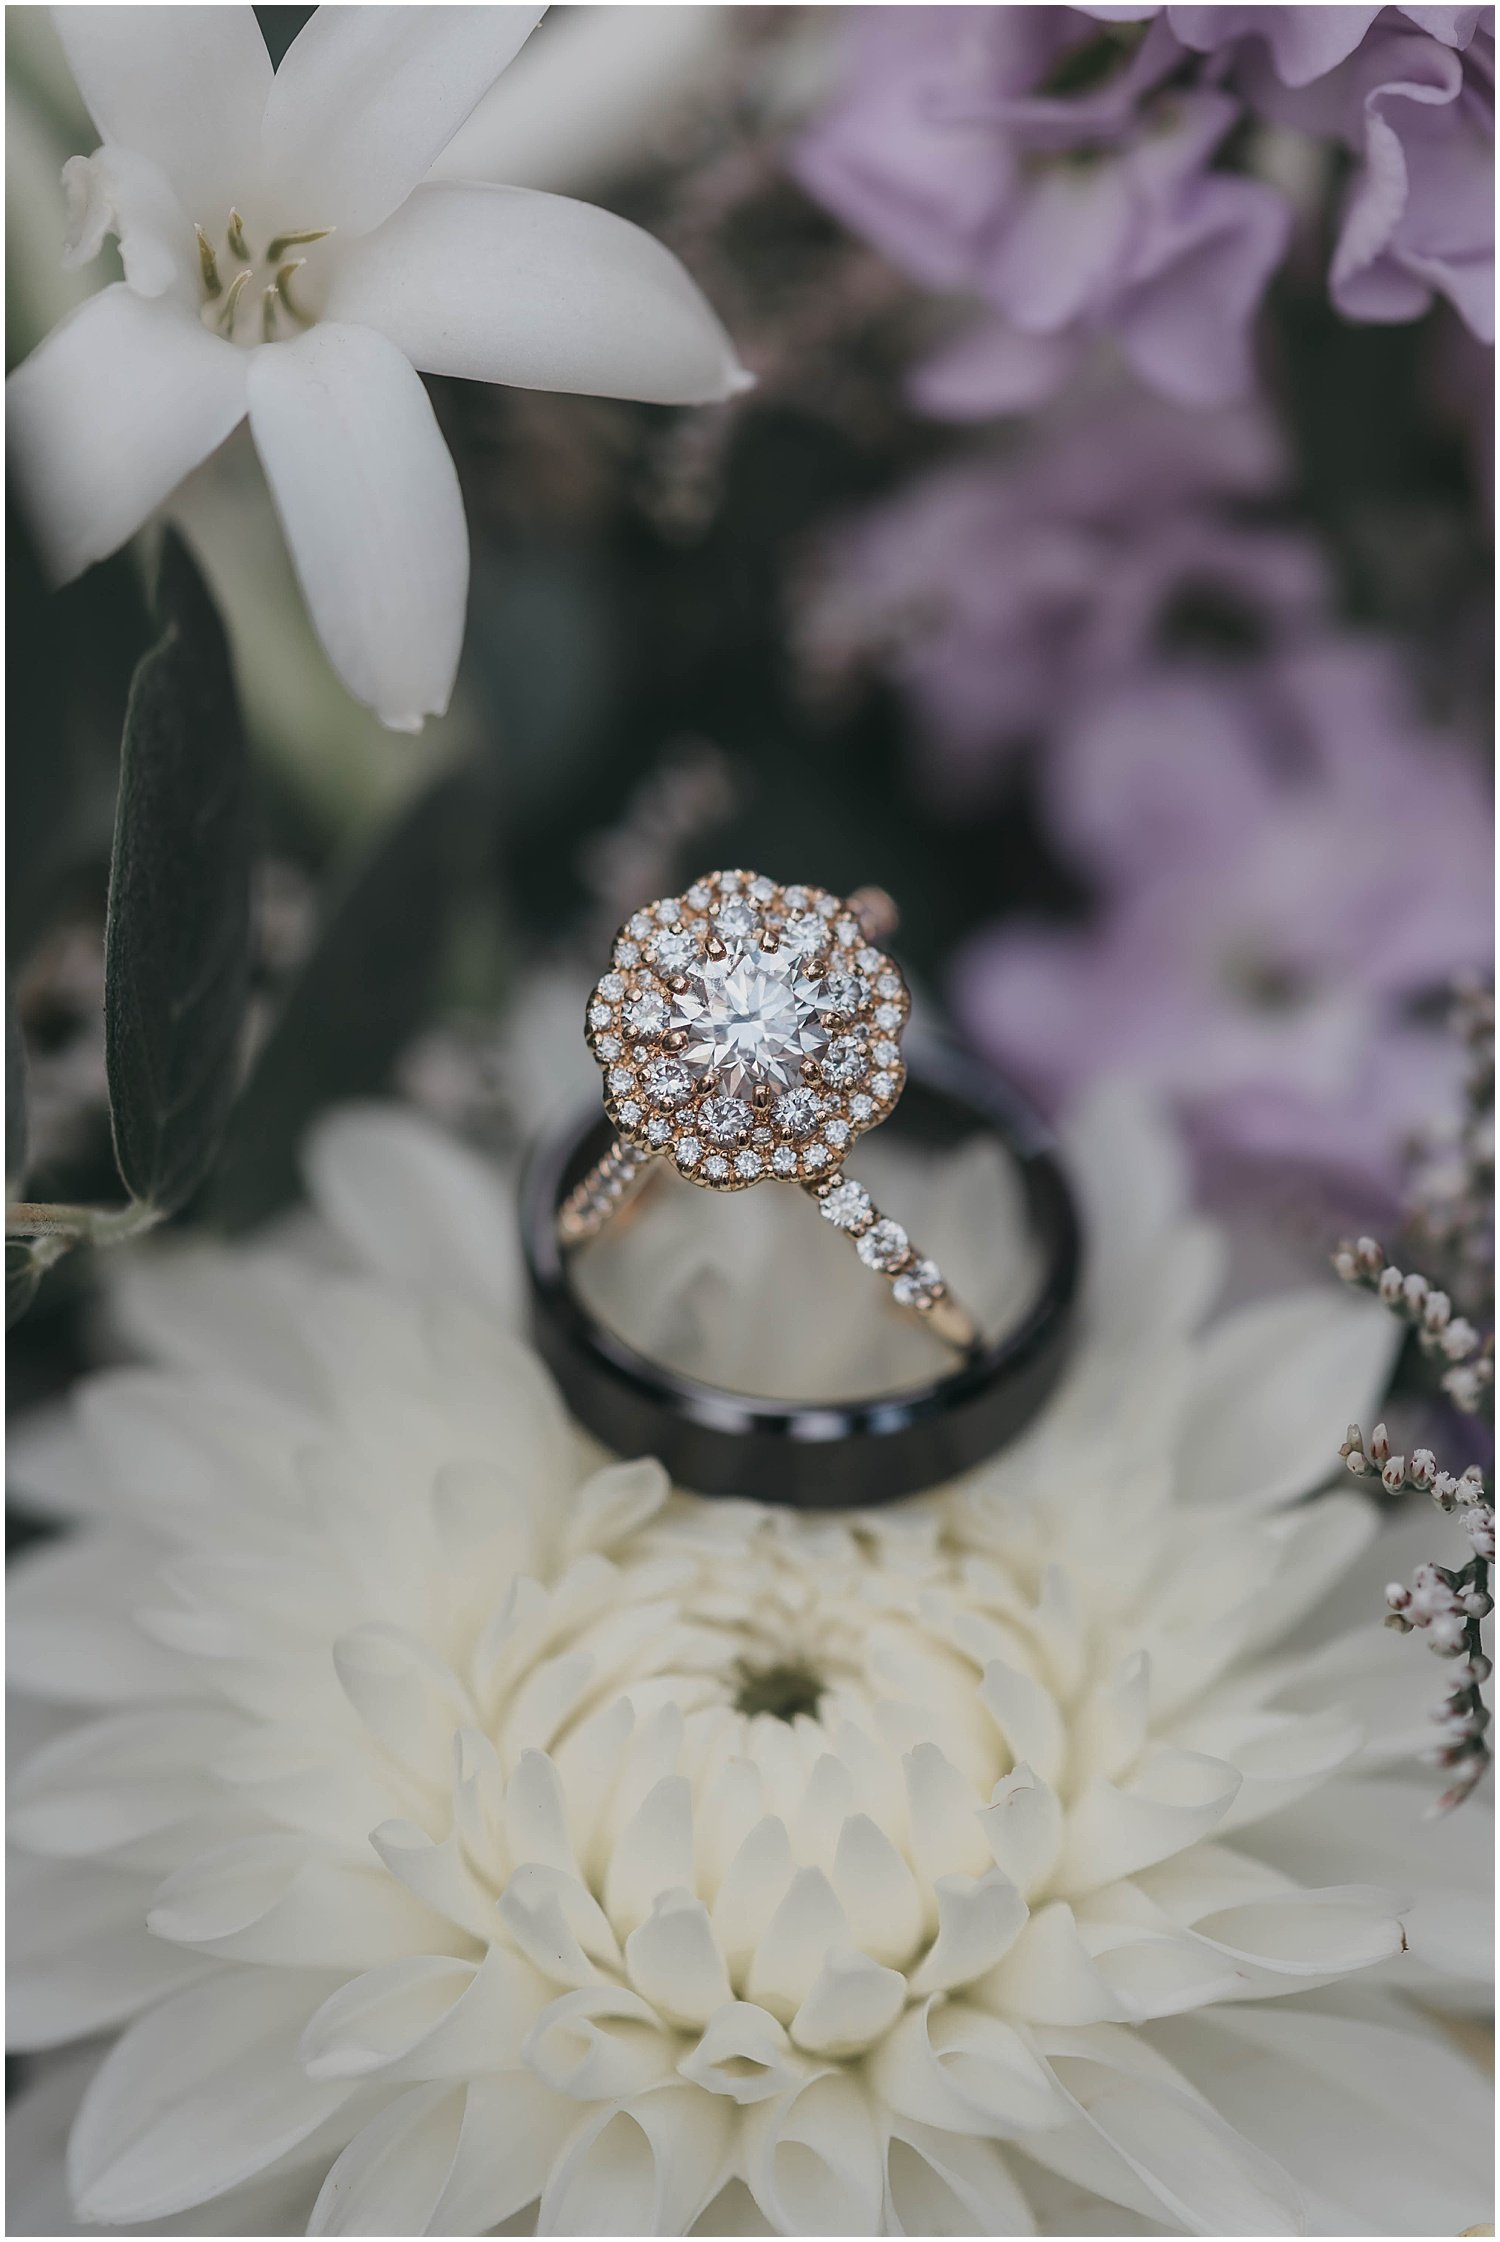 rings-floral.jpg